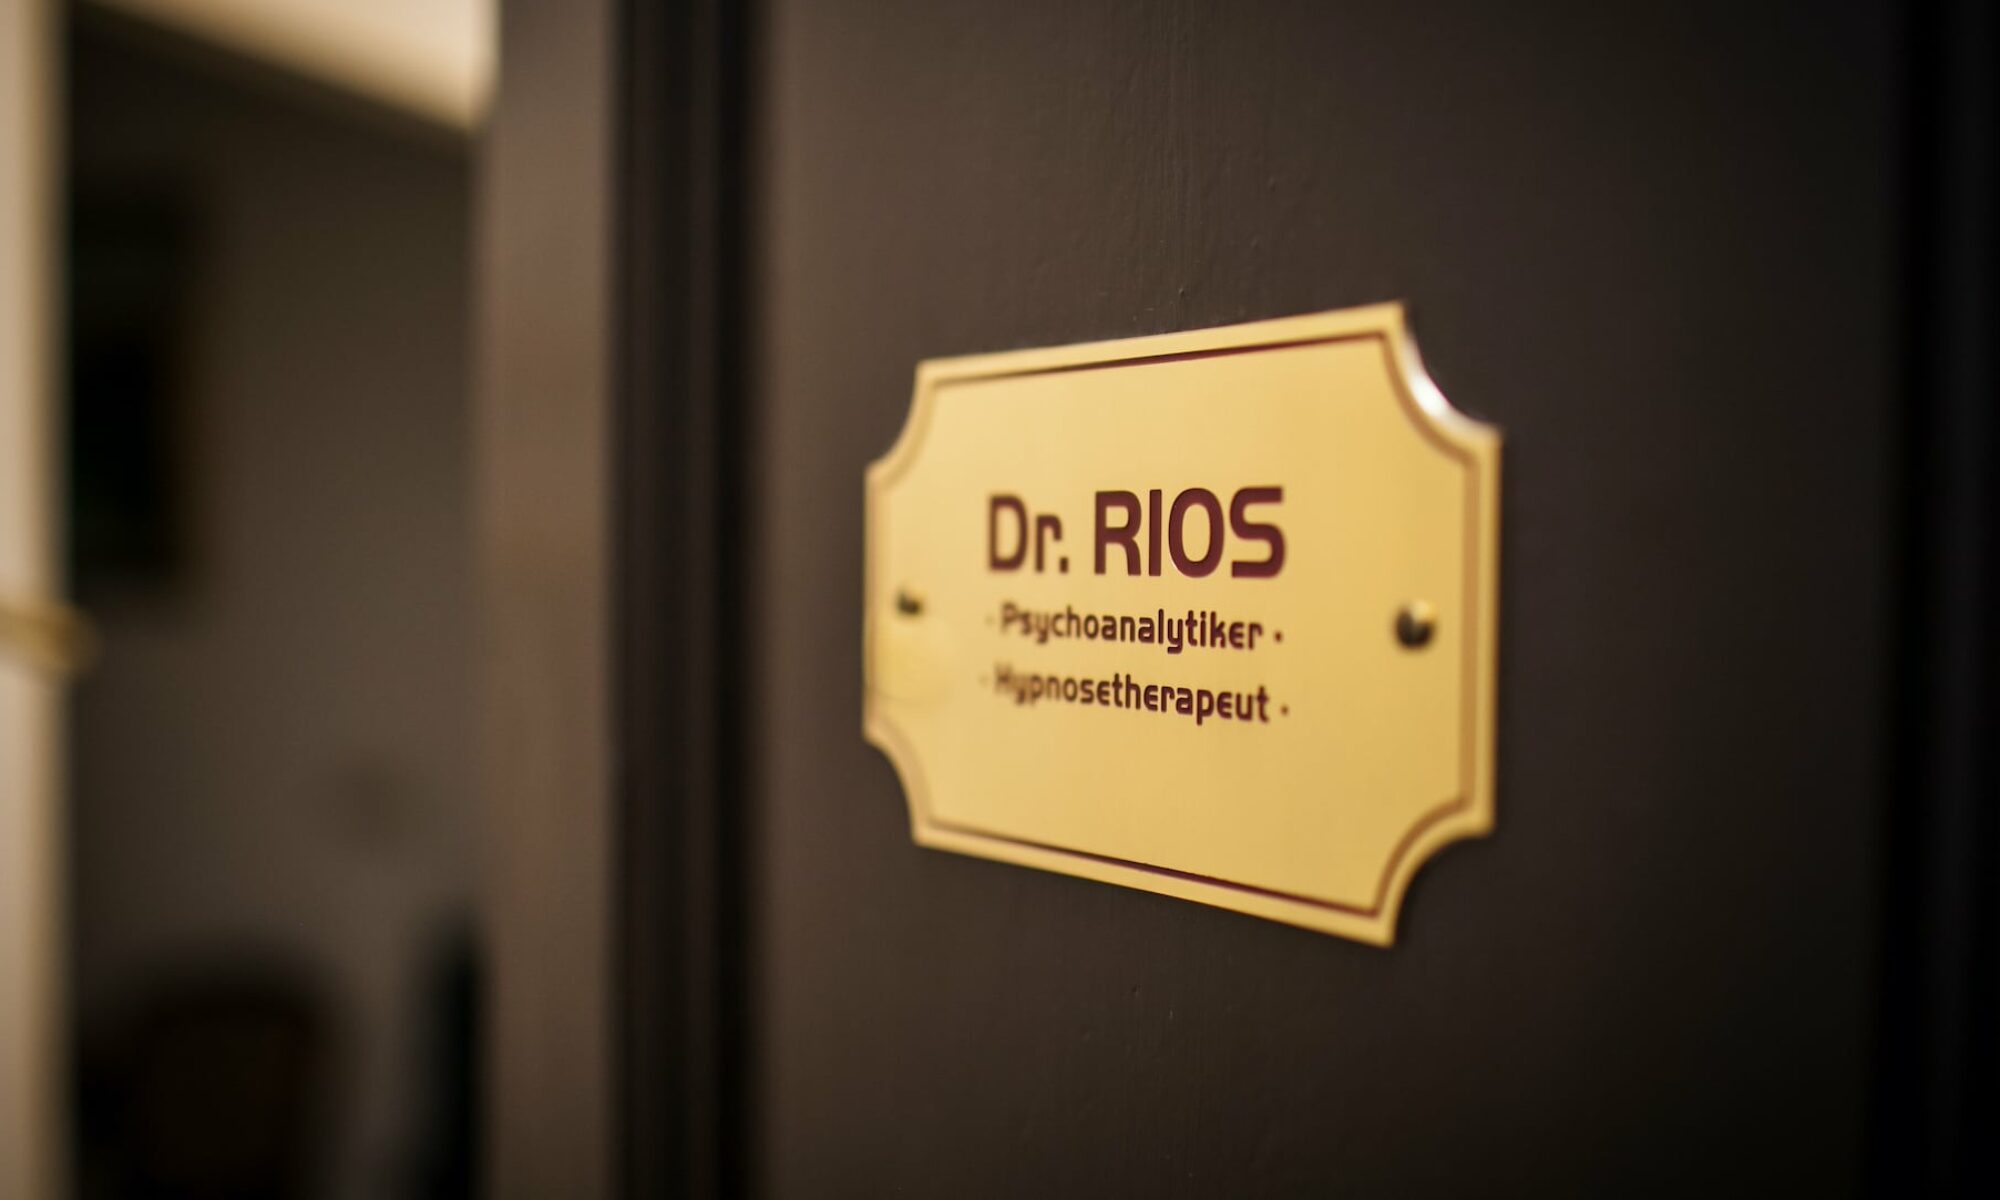 Dr. Rios